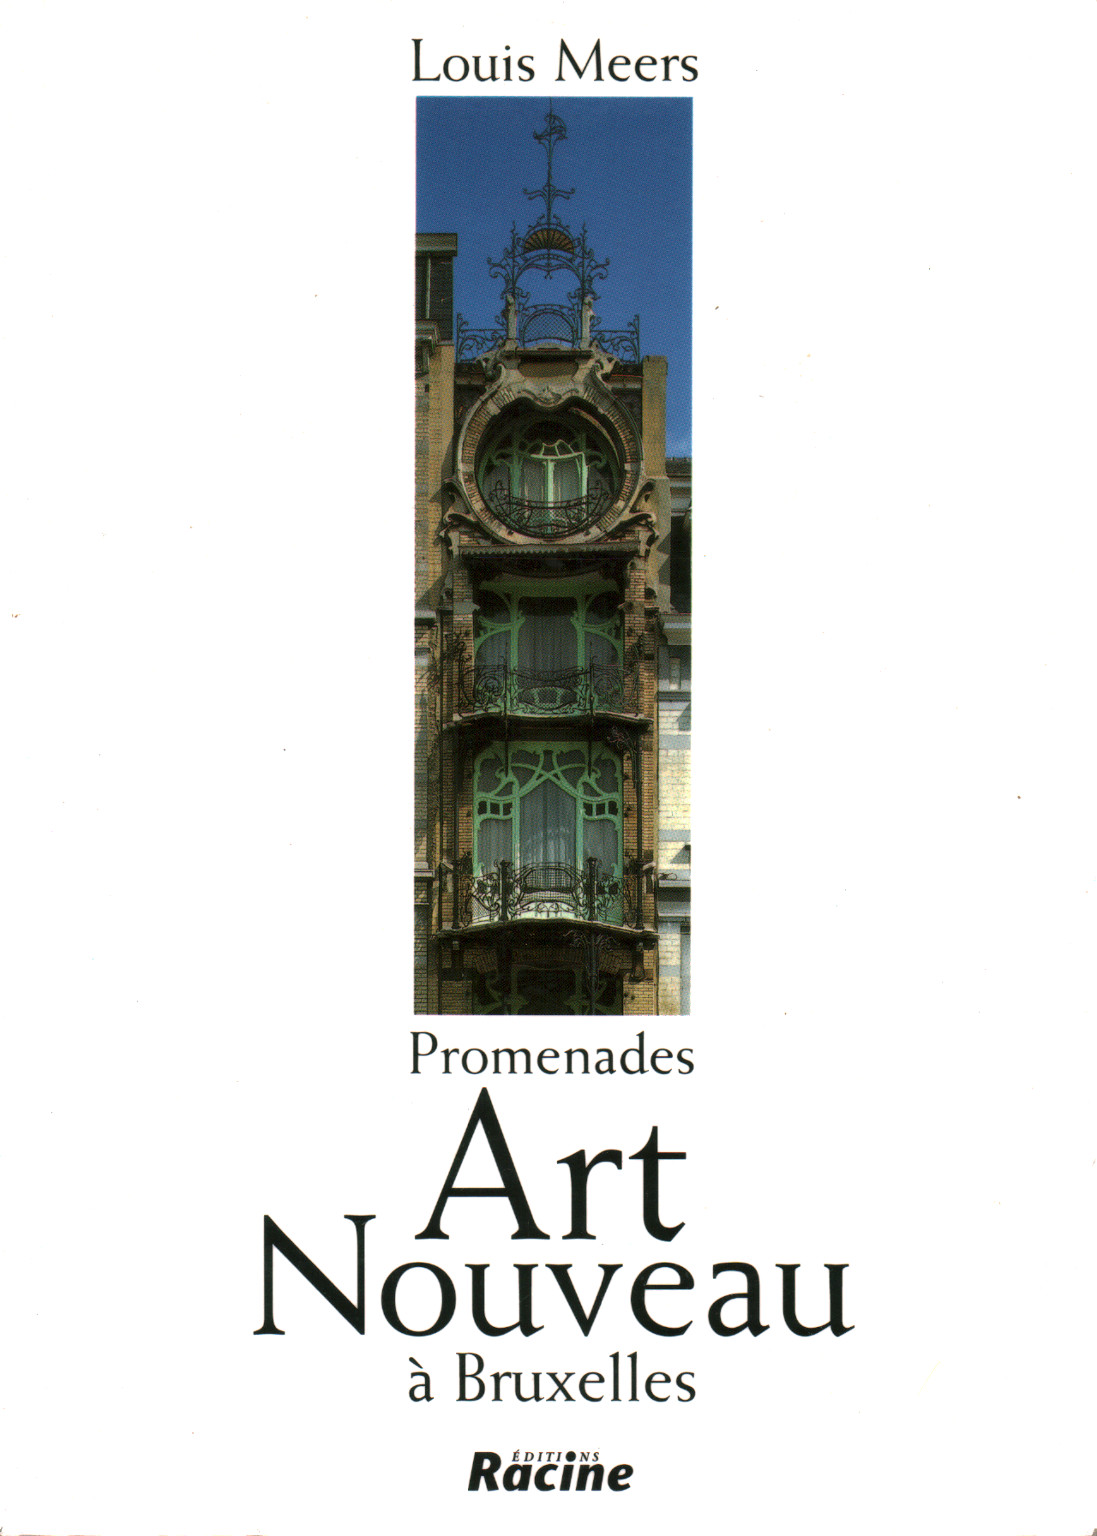 The Promenades Art Nouveau à Bruxelles, s.a.